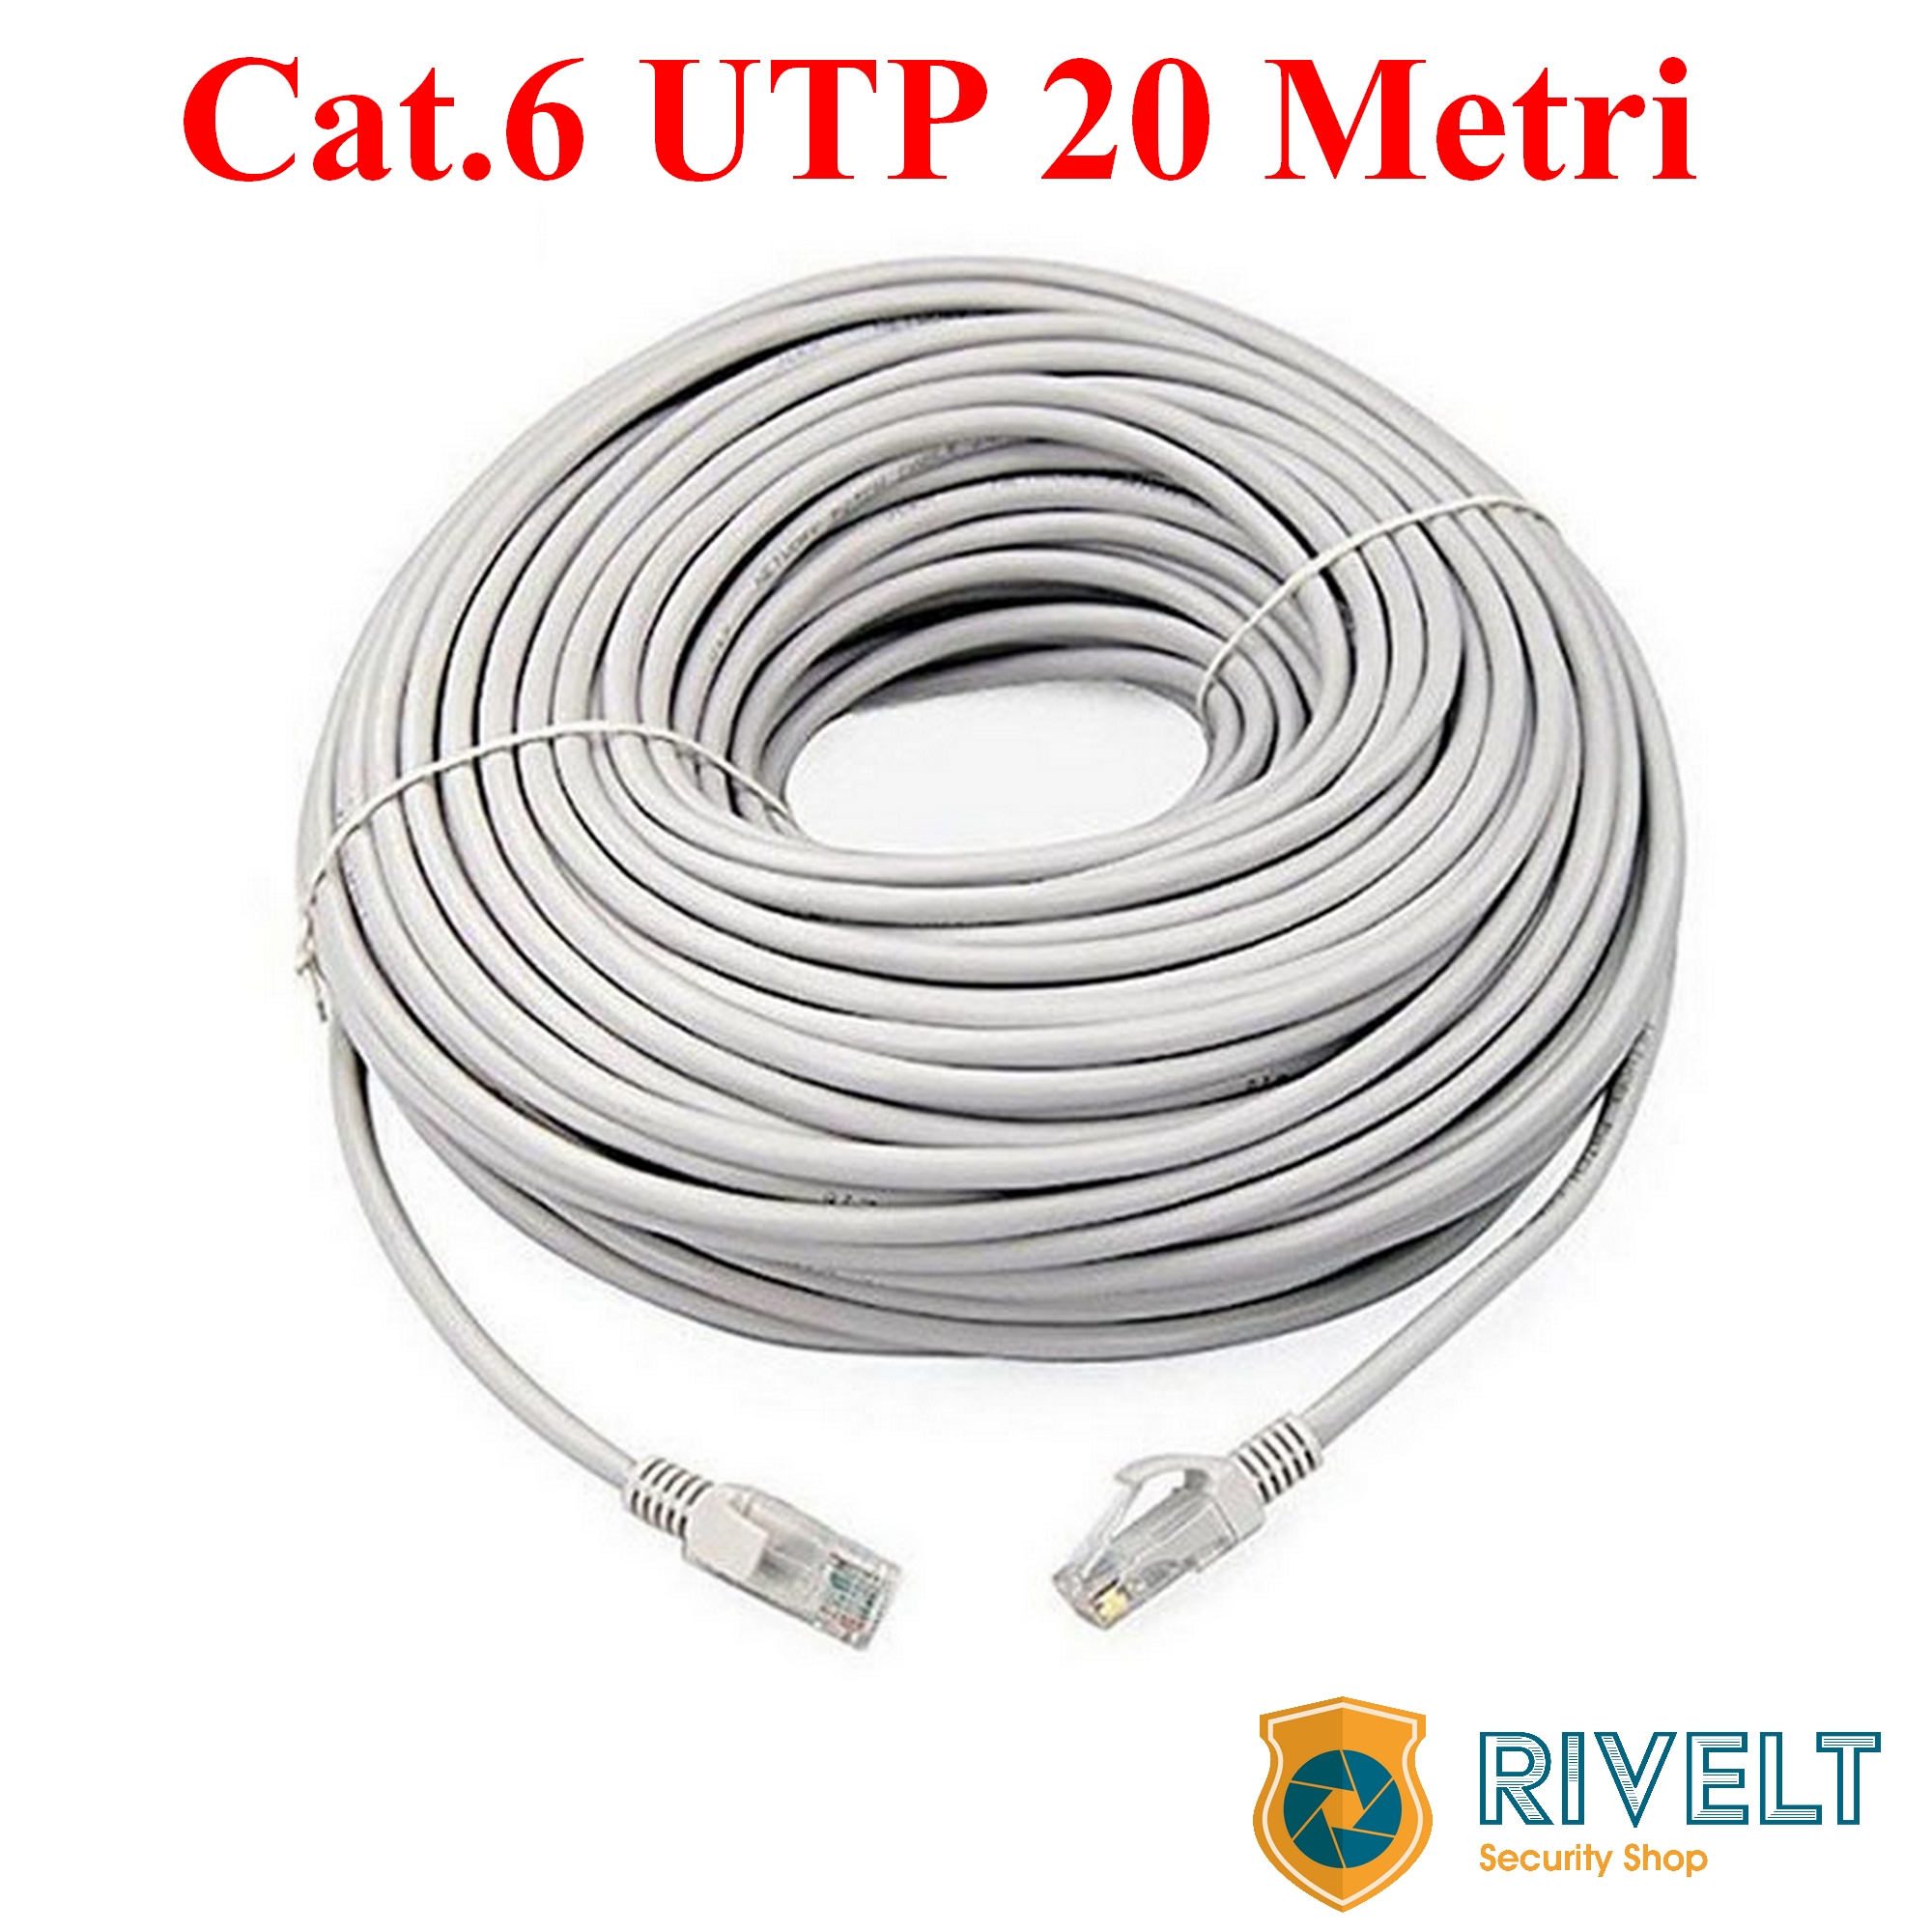 Cavo Ethernet Cablato con connettori RJ45 CAT 6 UTP 20 metri – Rivelt